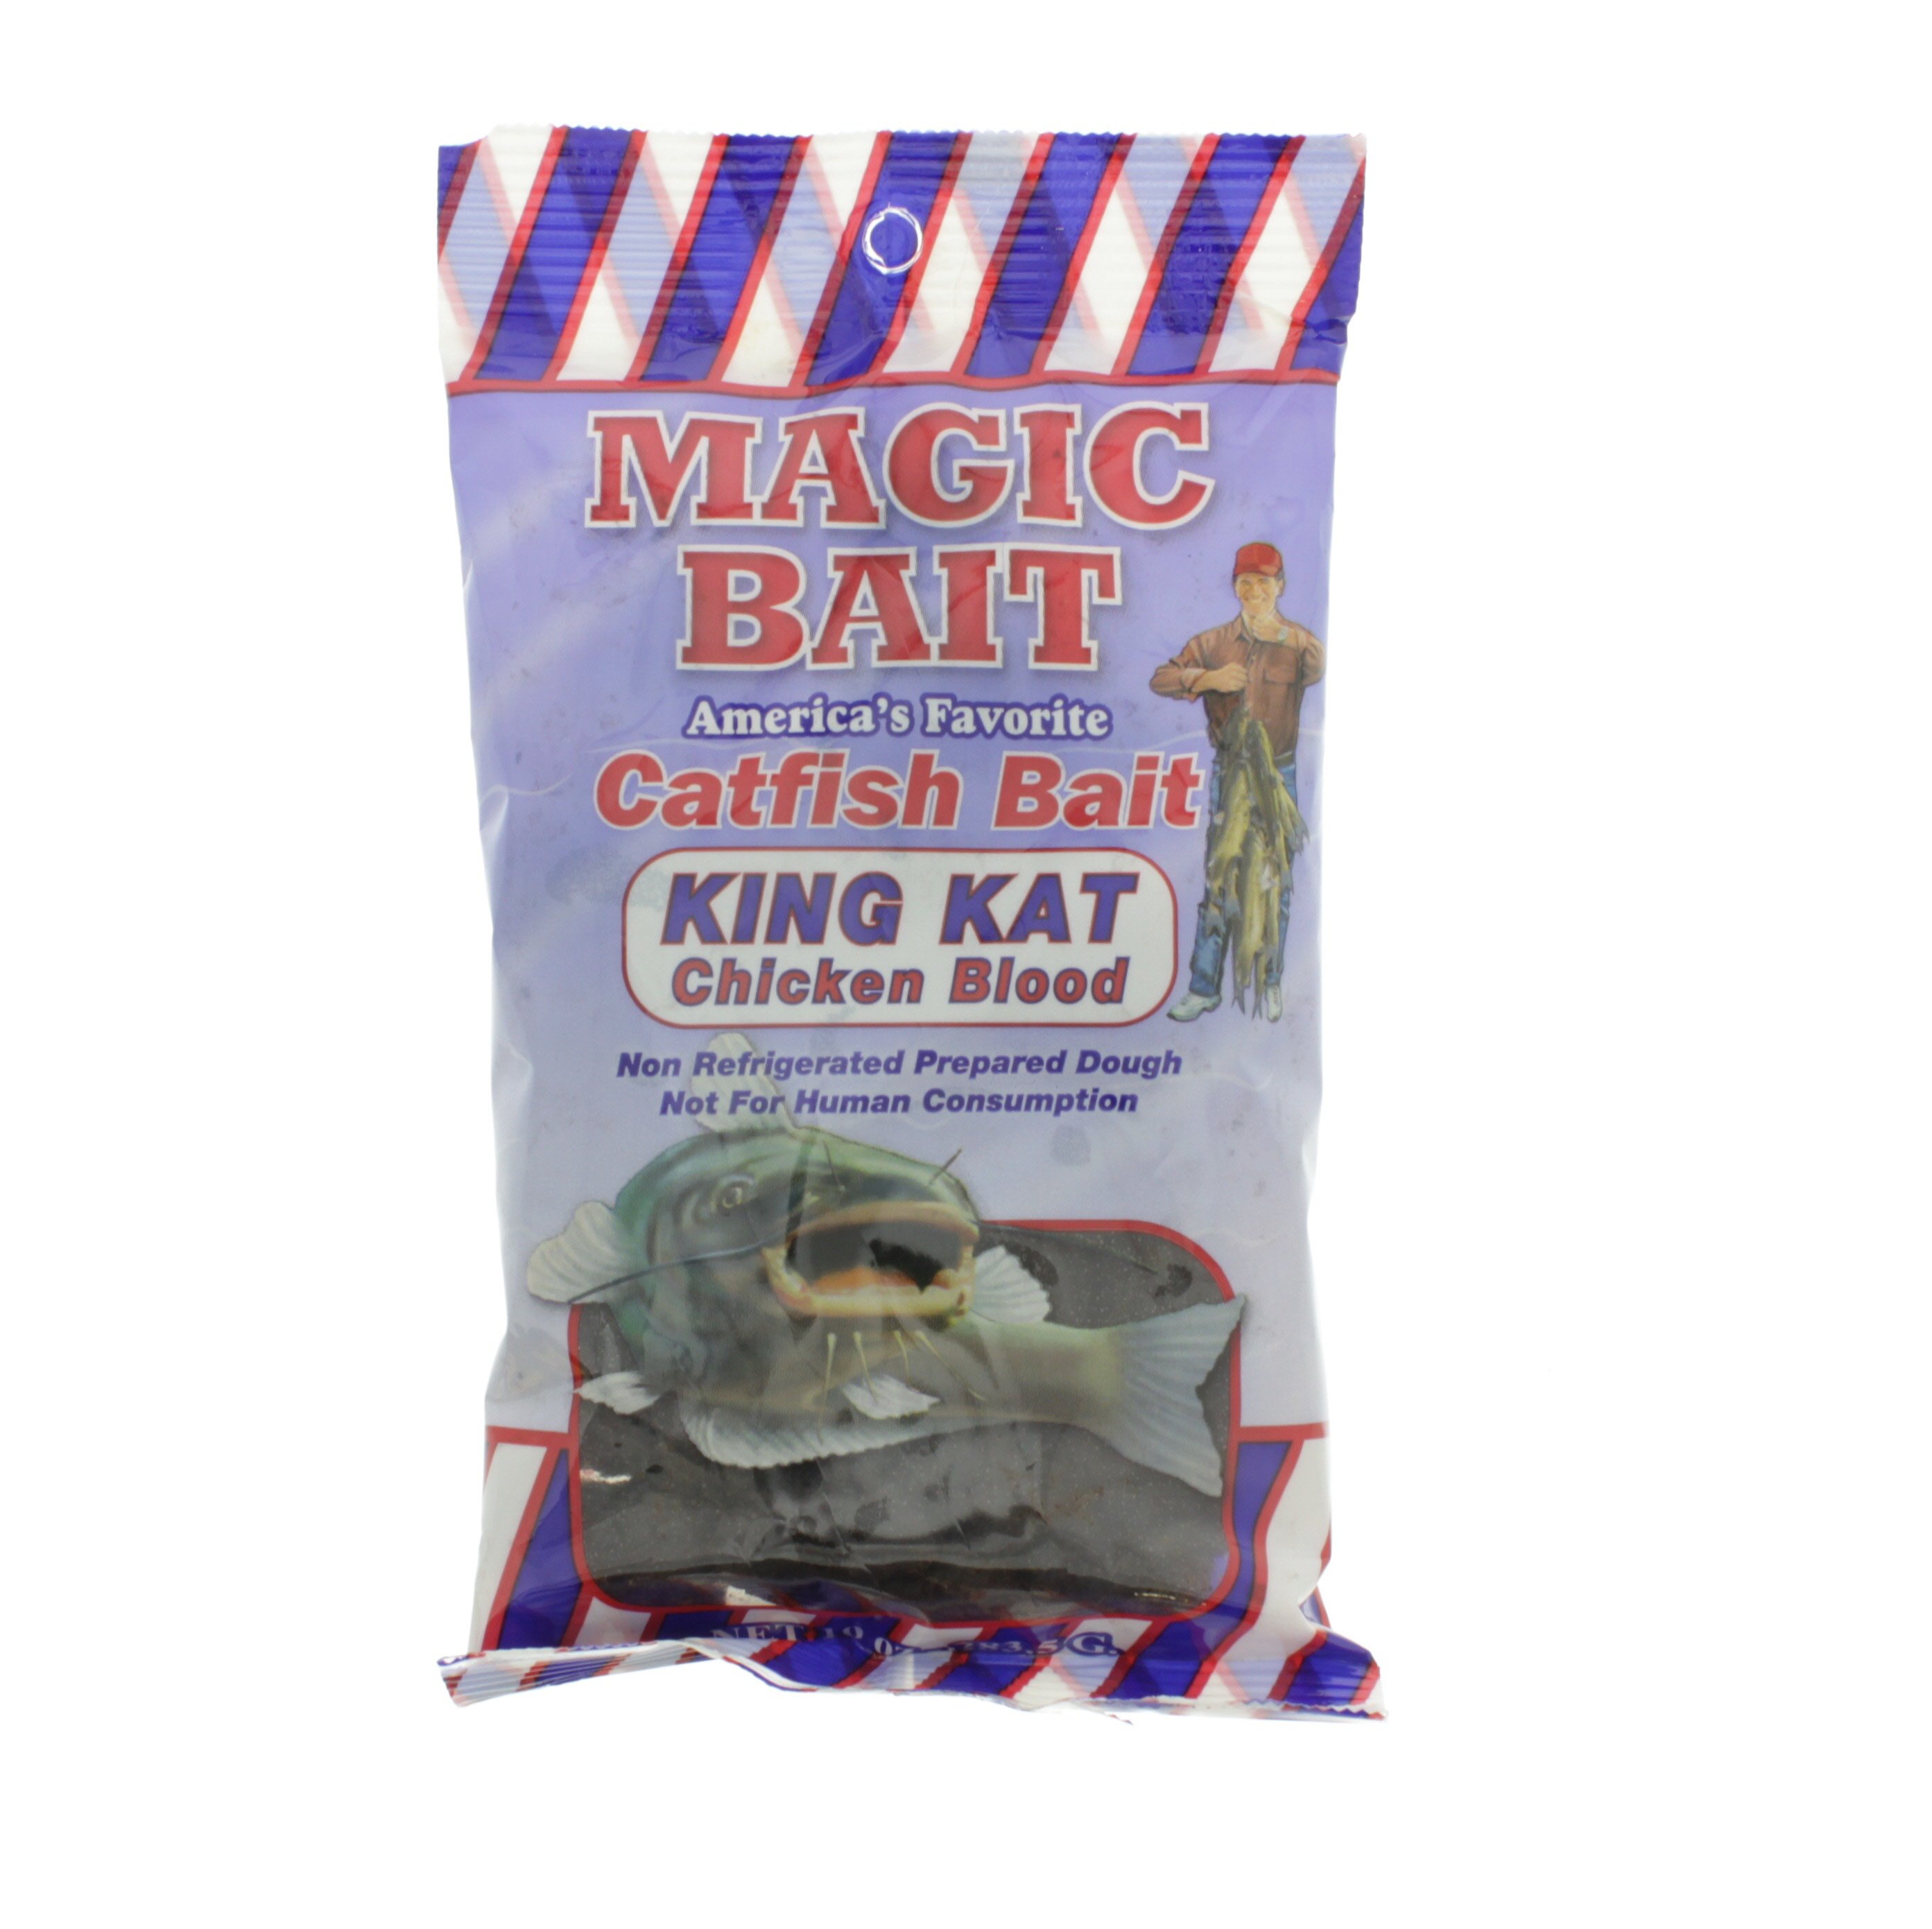 Magic Bait King Kat Chicken Blood Catfish Bait - Shop Fishing at H-E-B